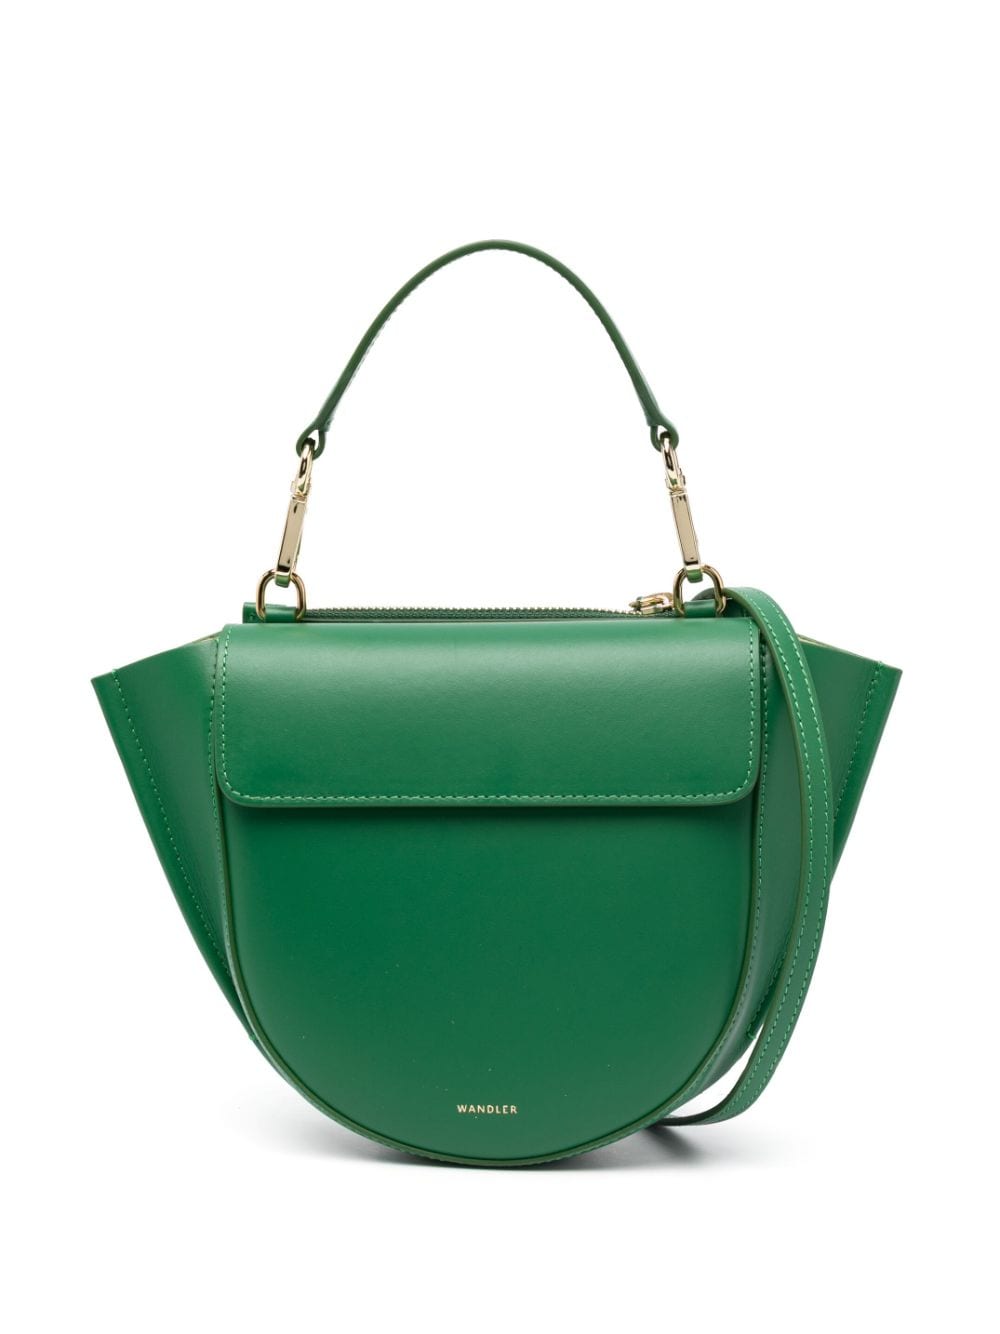 Wandler Hortensia leather shoulder bag - Green von Wandler